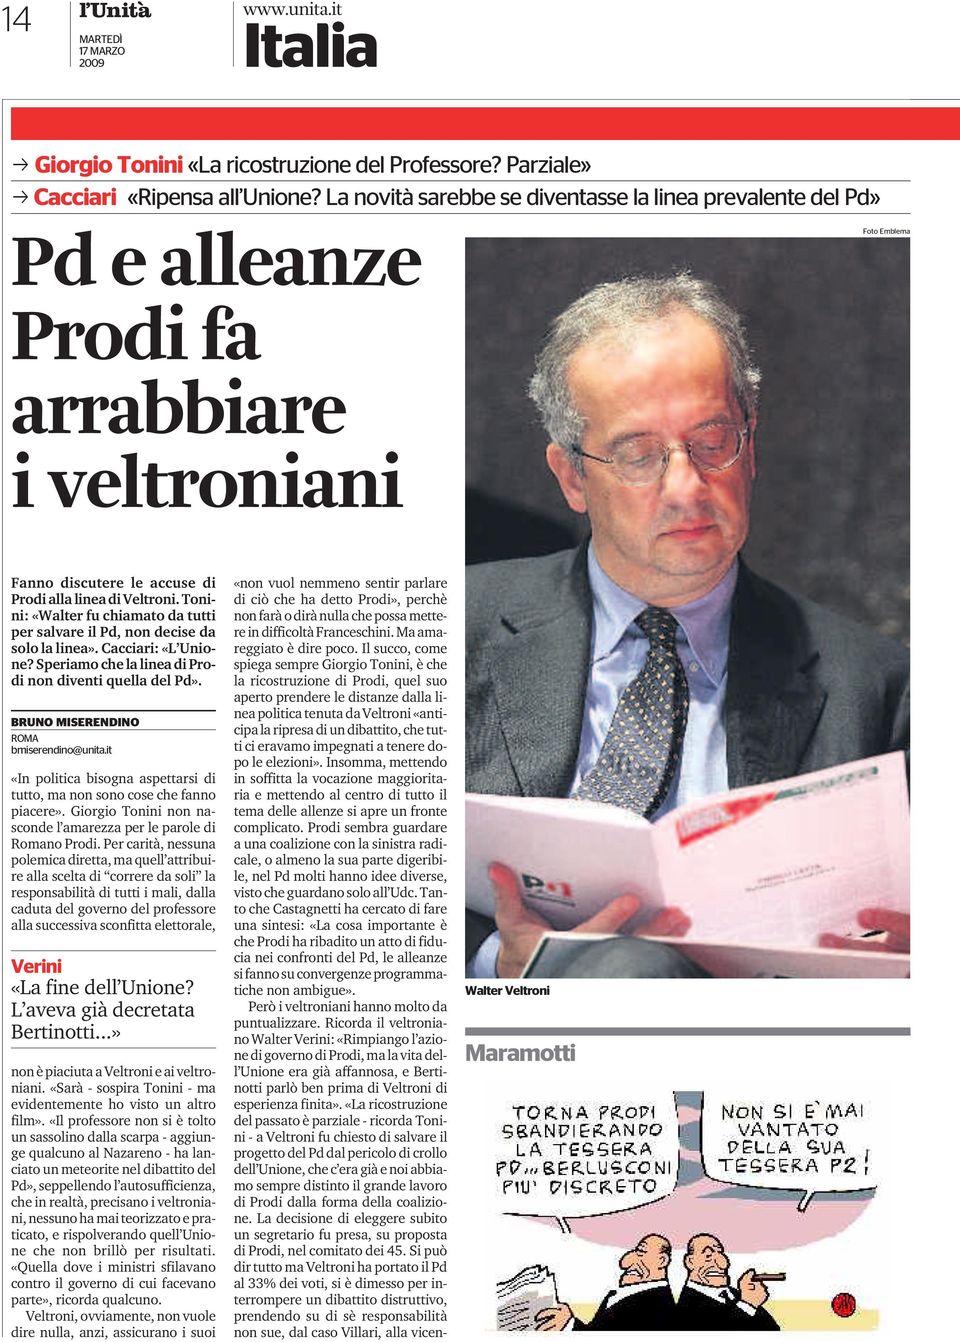 Tonini: «Walter fu chiamato da tutti per salvare il Pd, non decise da solo la linea». Cacciari: «L Unione? Speriamo che la linea di Prodi non diventi quella del Pd».